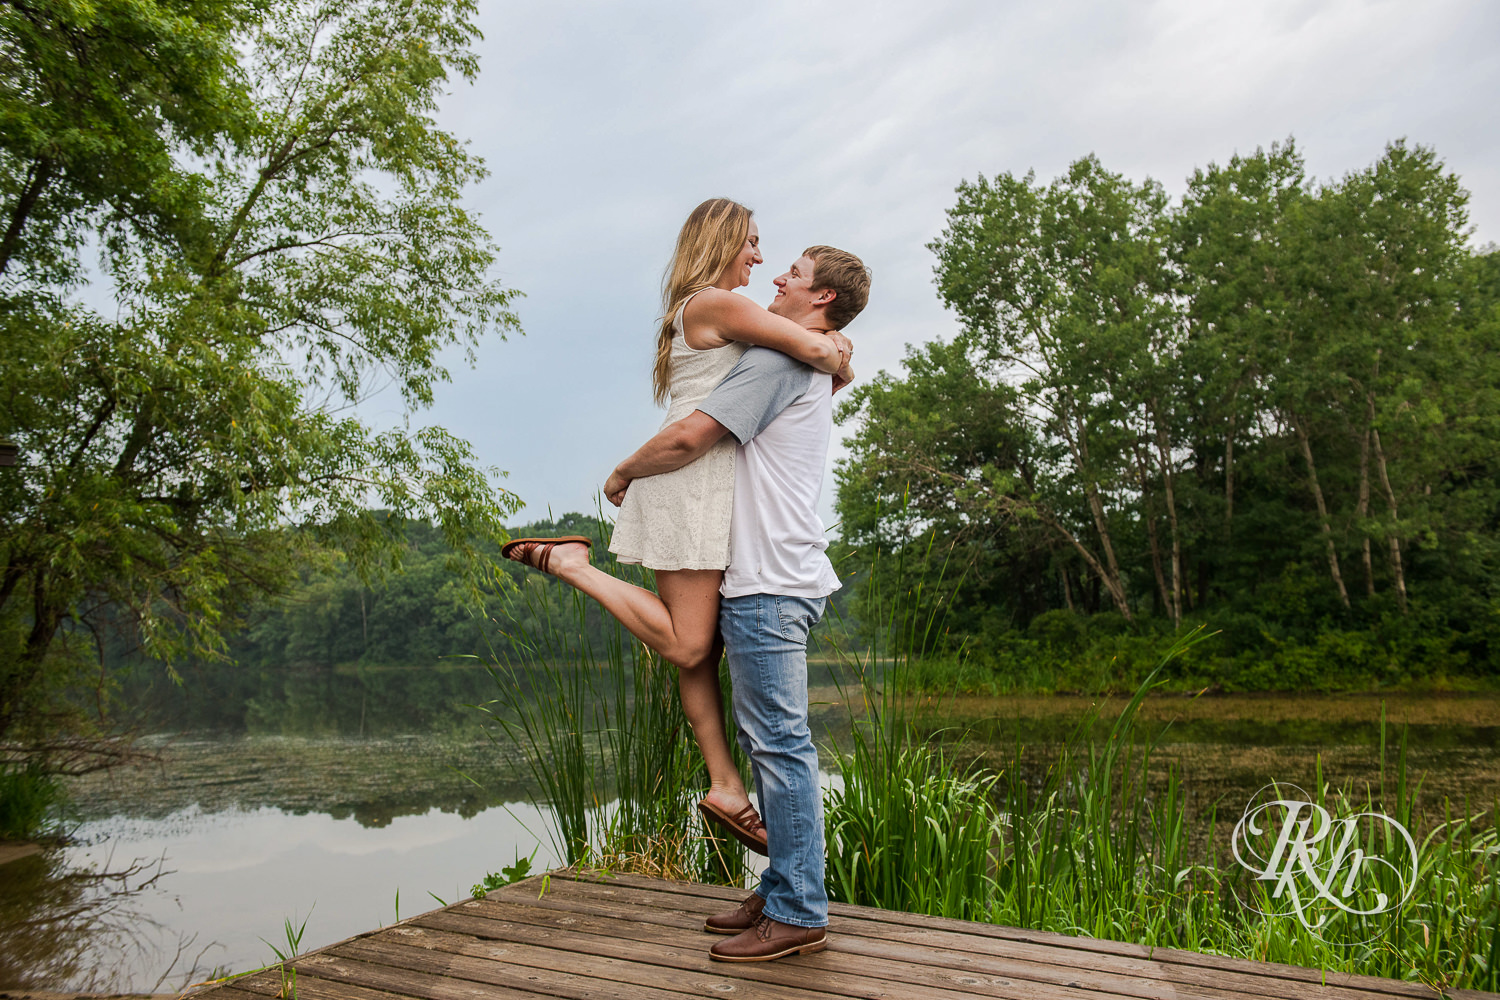 Man in jeans lifts woman in white dress on dock in Lebanon Hills Regional Park in Eagan, Minnesota.